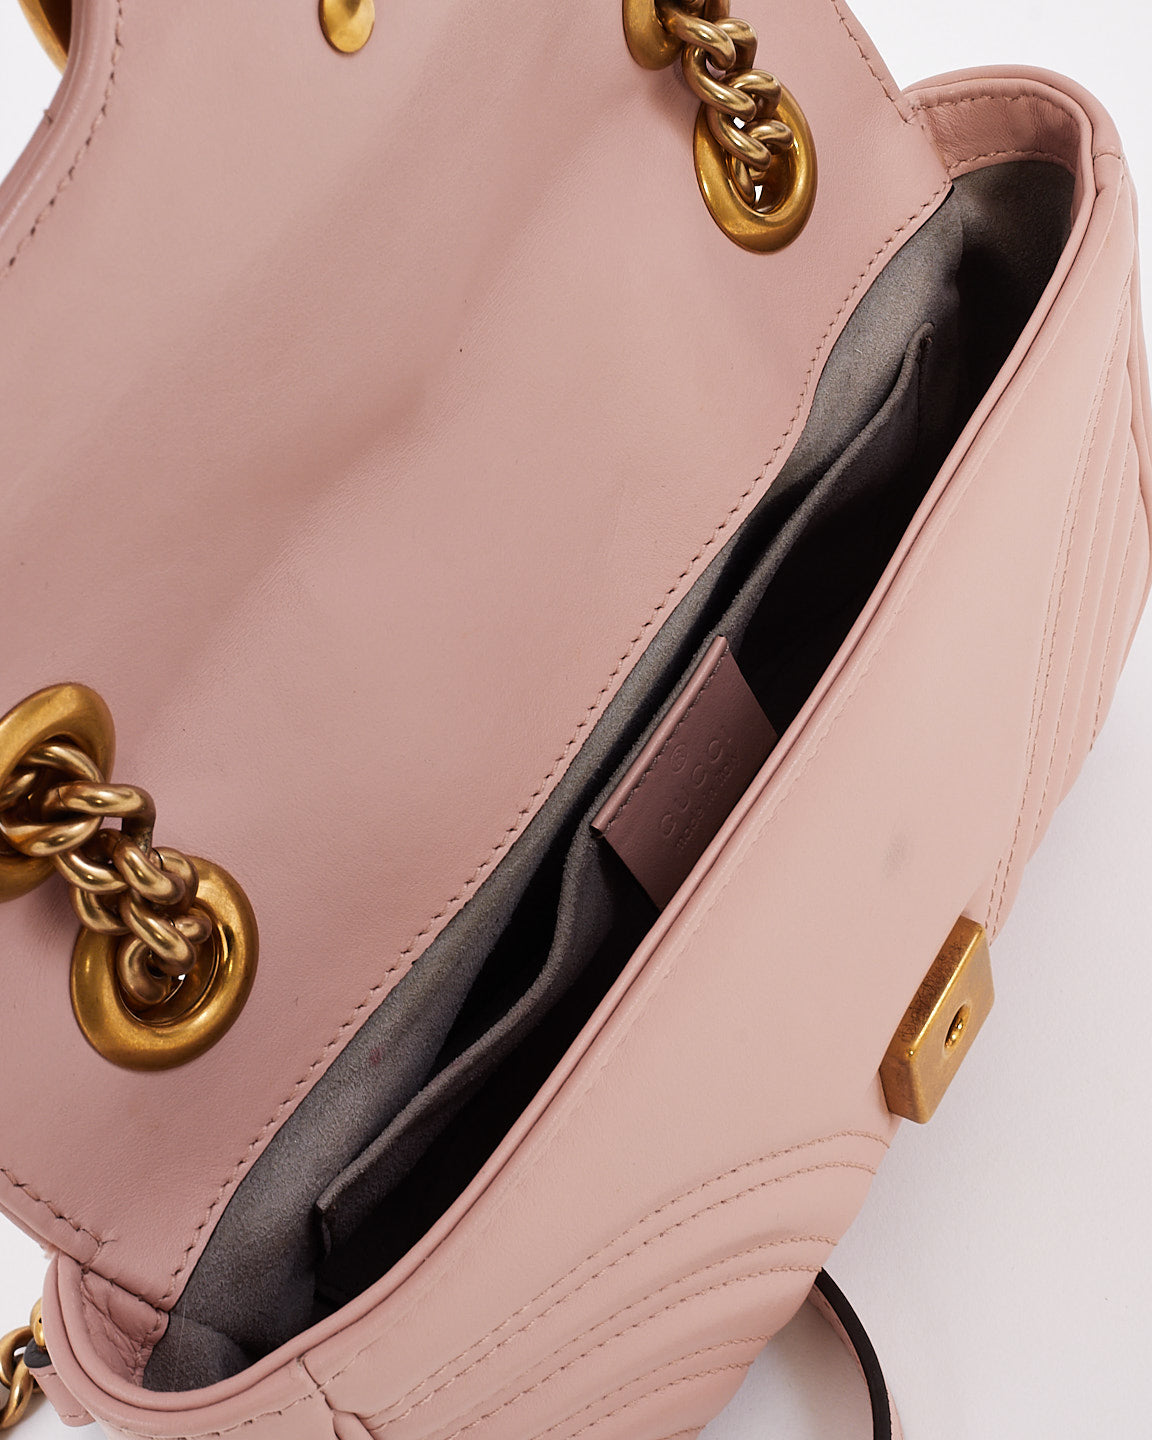 Petit sac à bandoulière GG Marmont en cuir matelassé rose Gucci